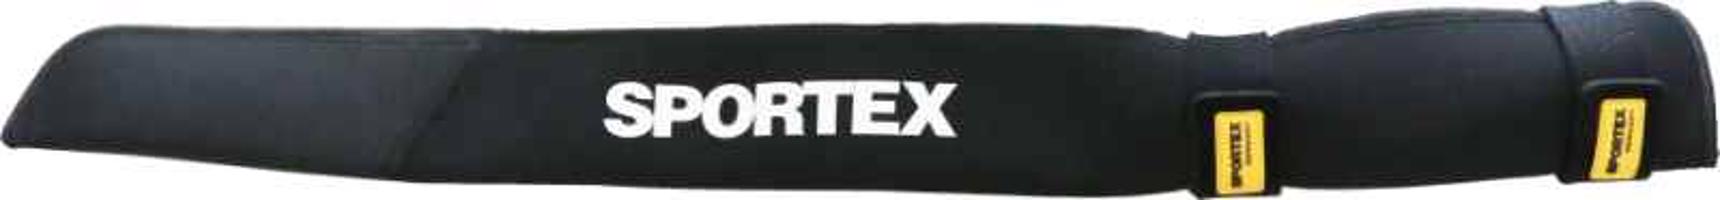 SPORTEX ochranné pouzdro s páskami - neoprenové Variant: Délka: 85cm